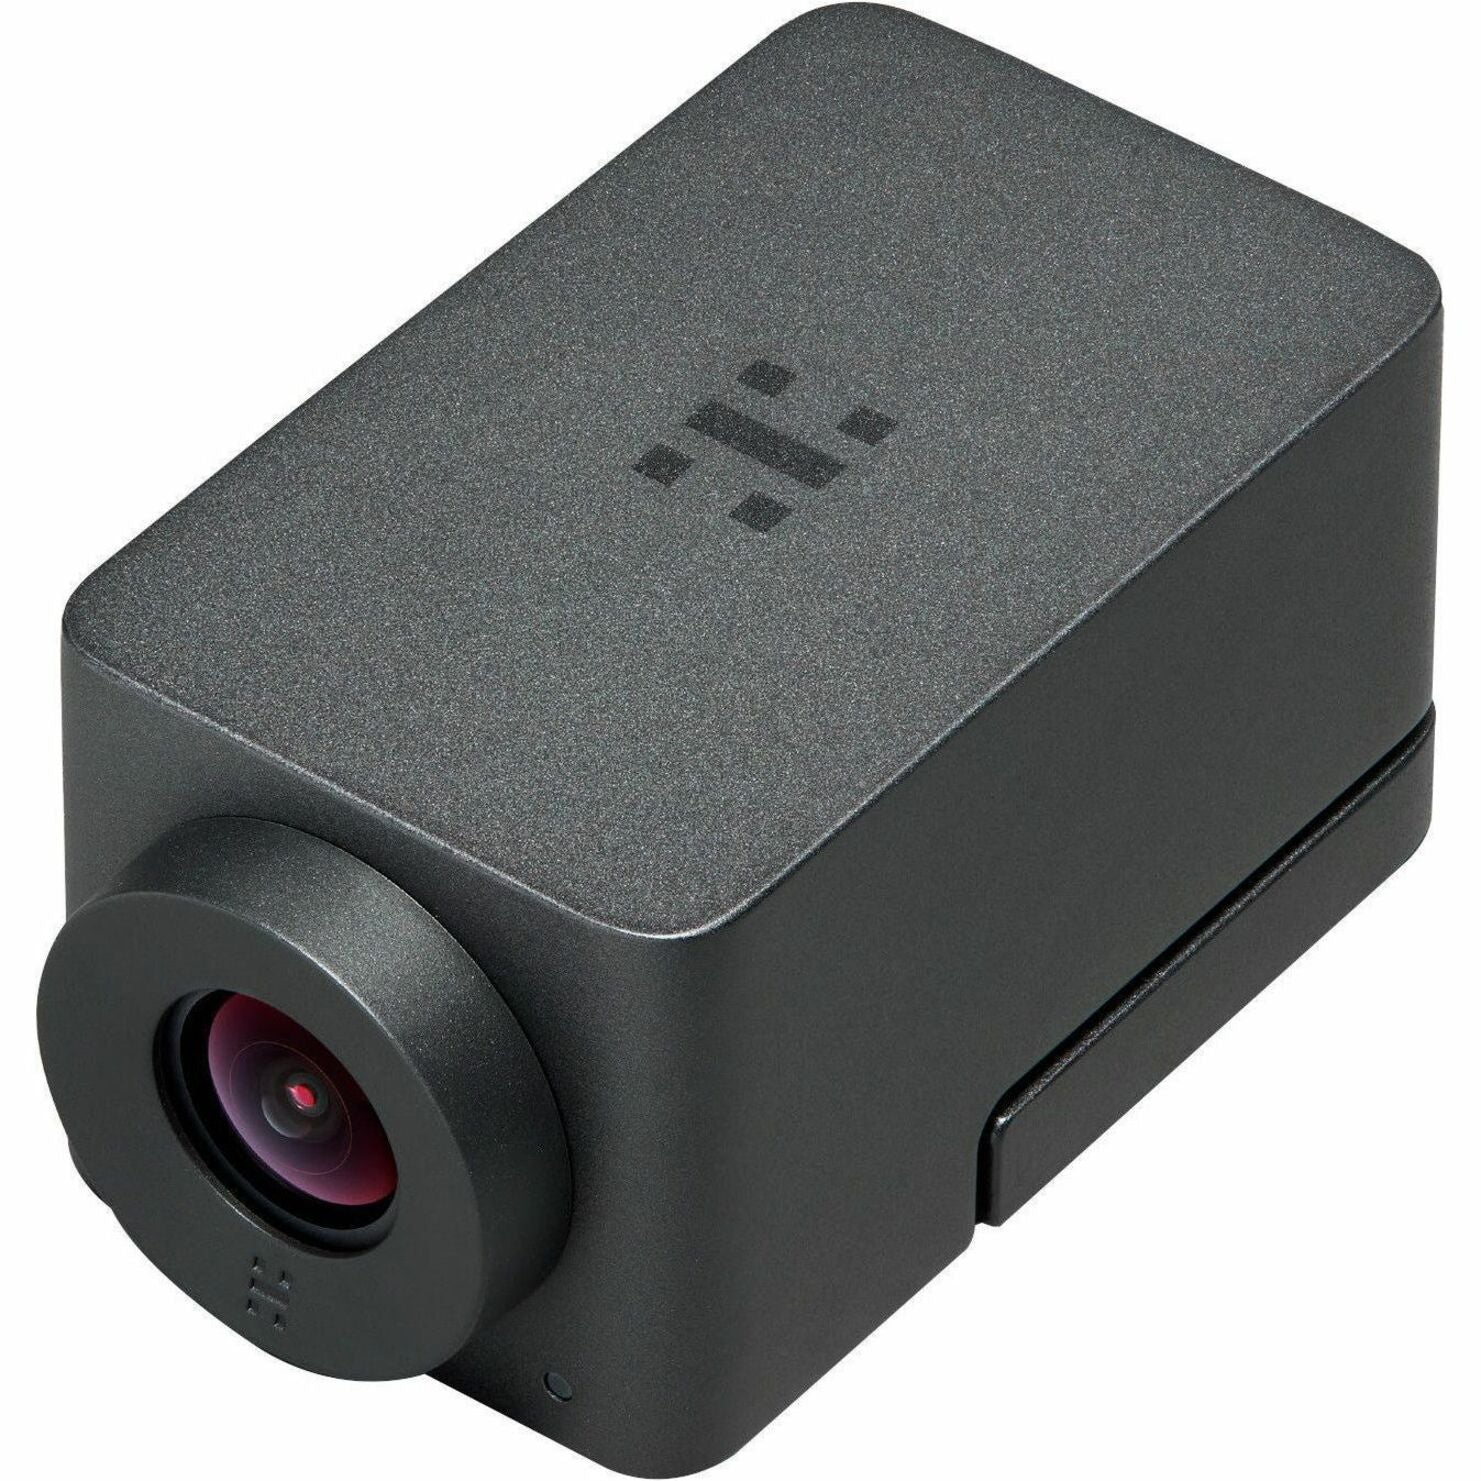 Huddly 7090043790856 Webcam, 12MP, 1080p, 30fps, 150° FOV, USB 3.0 Type C